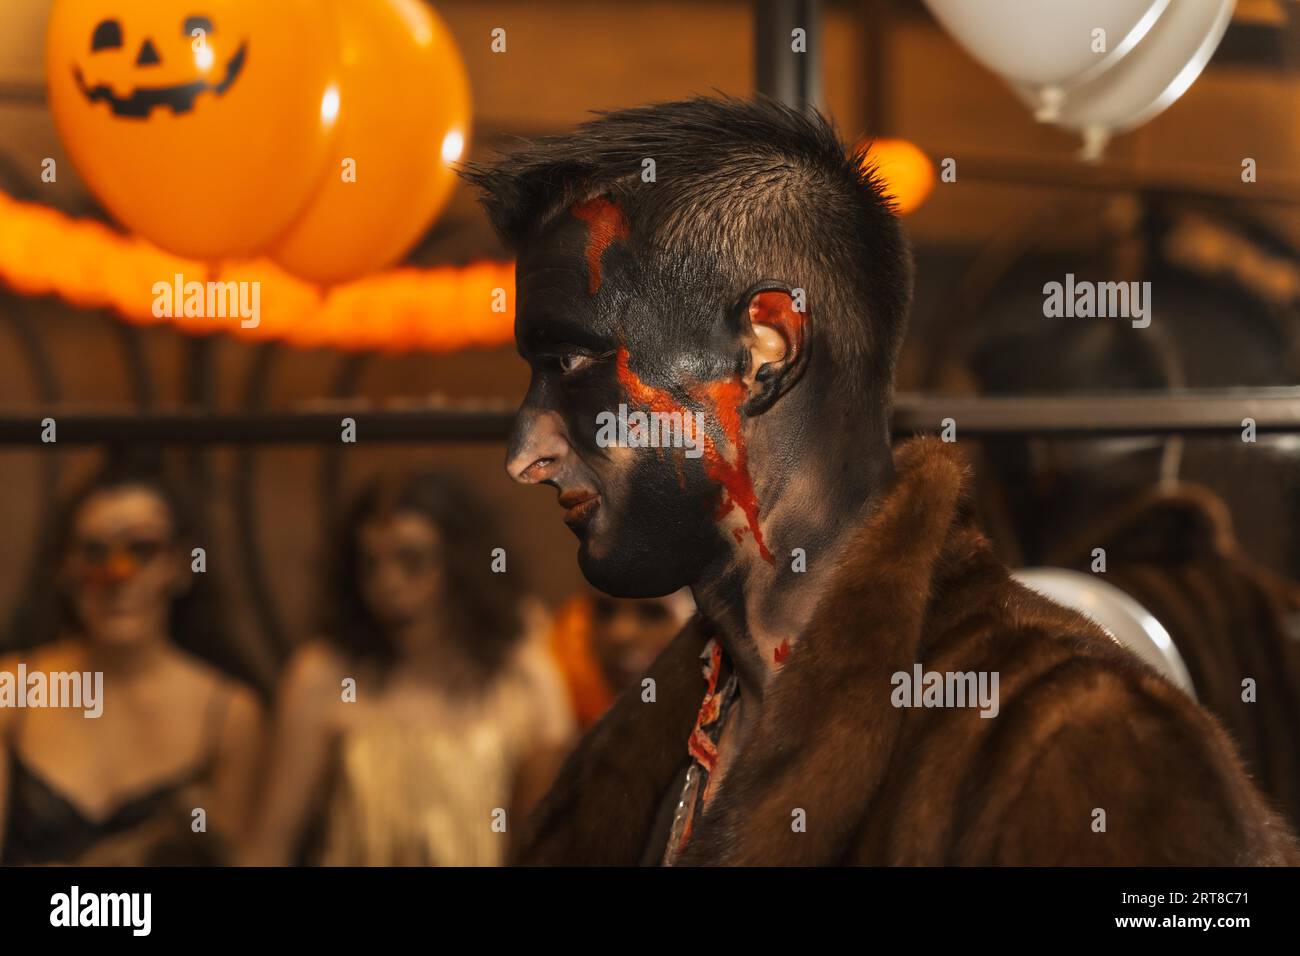 Halloween-Party mit Freunden in einem Disco-Nachtclub, Porträt eines Mannes im Kostüm mit bemaltem Bett Stockfoto